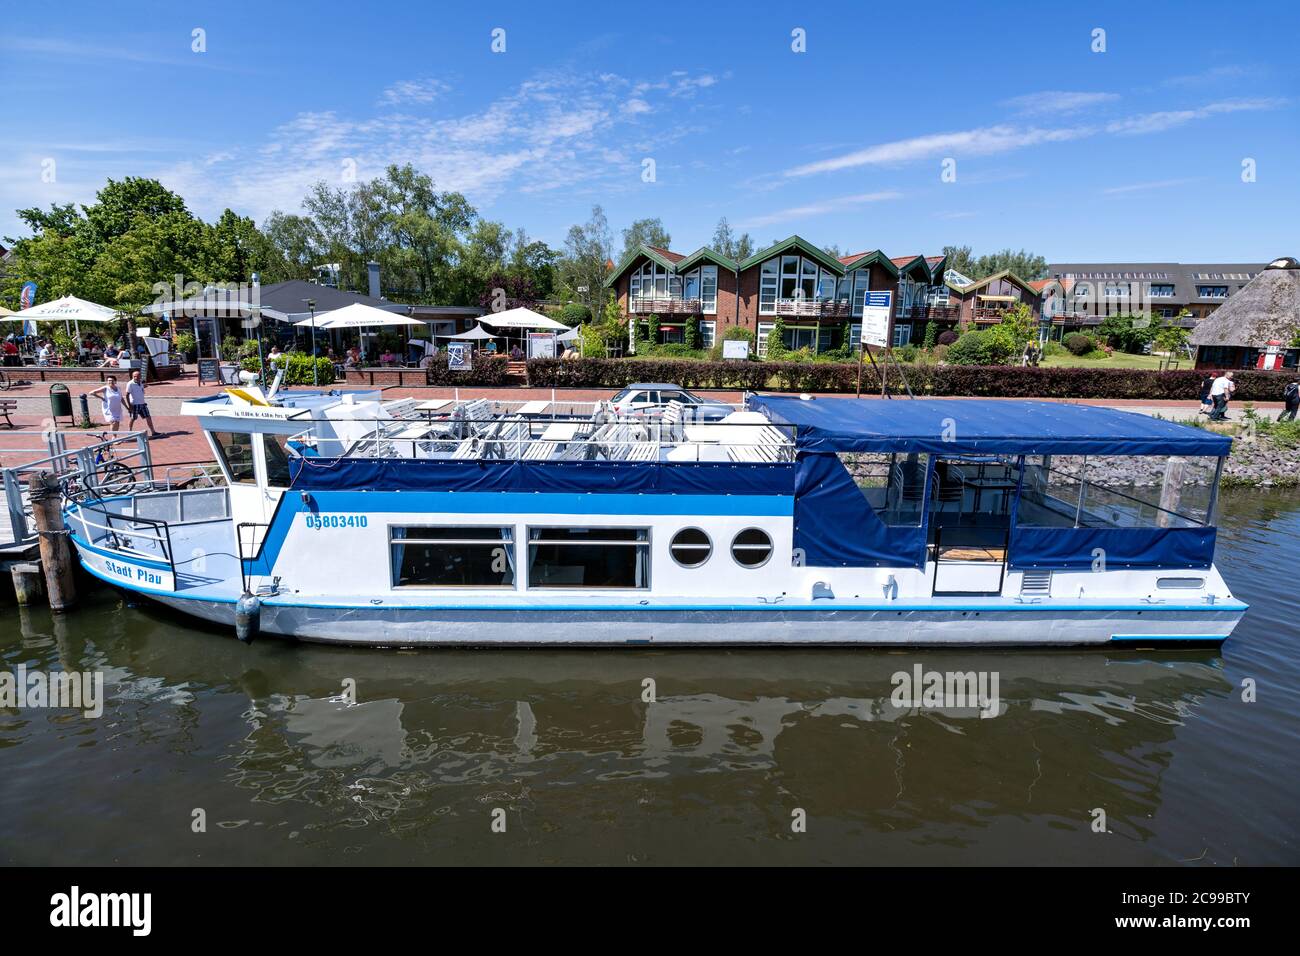 Ausflugsboot STADT PLAU der Fahrgastschifffahrt Wichmann in Plau am See, Deutschland Stockfoto